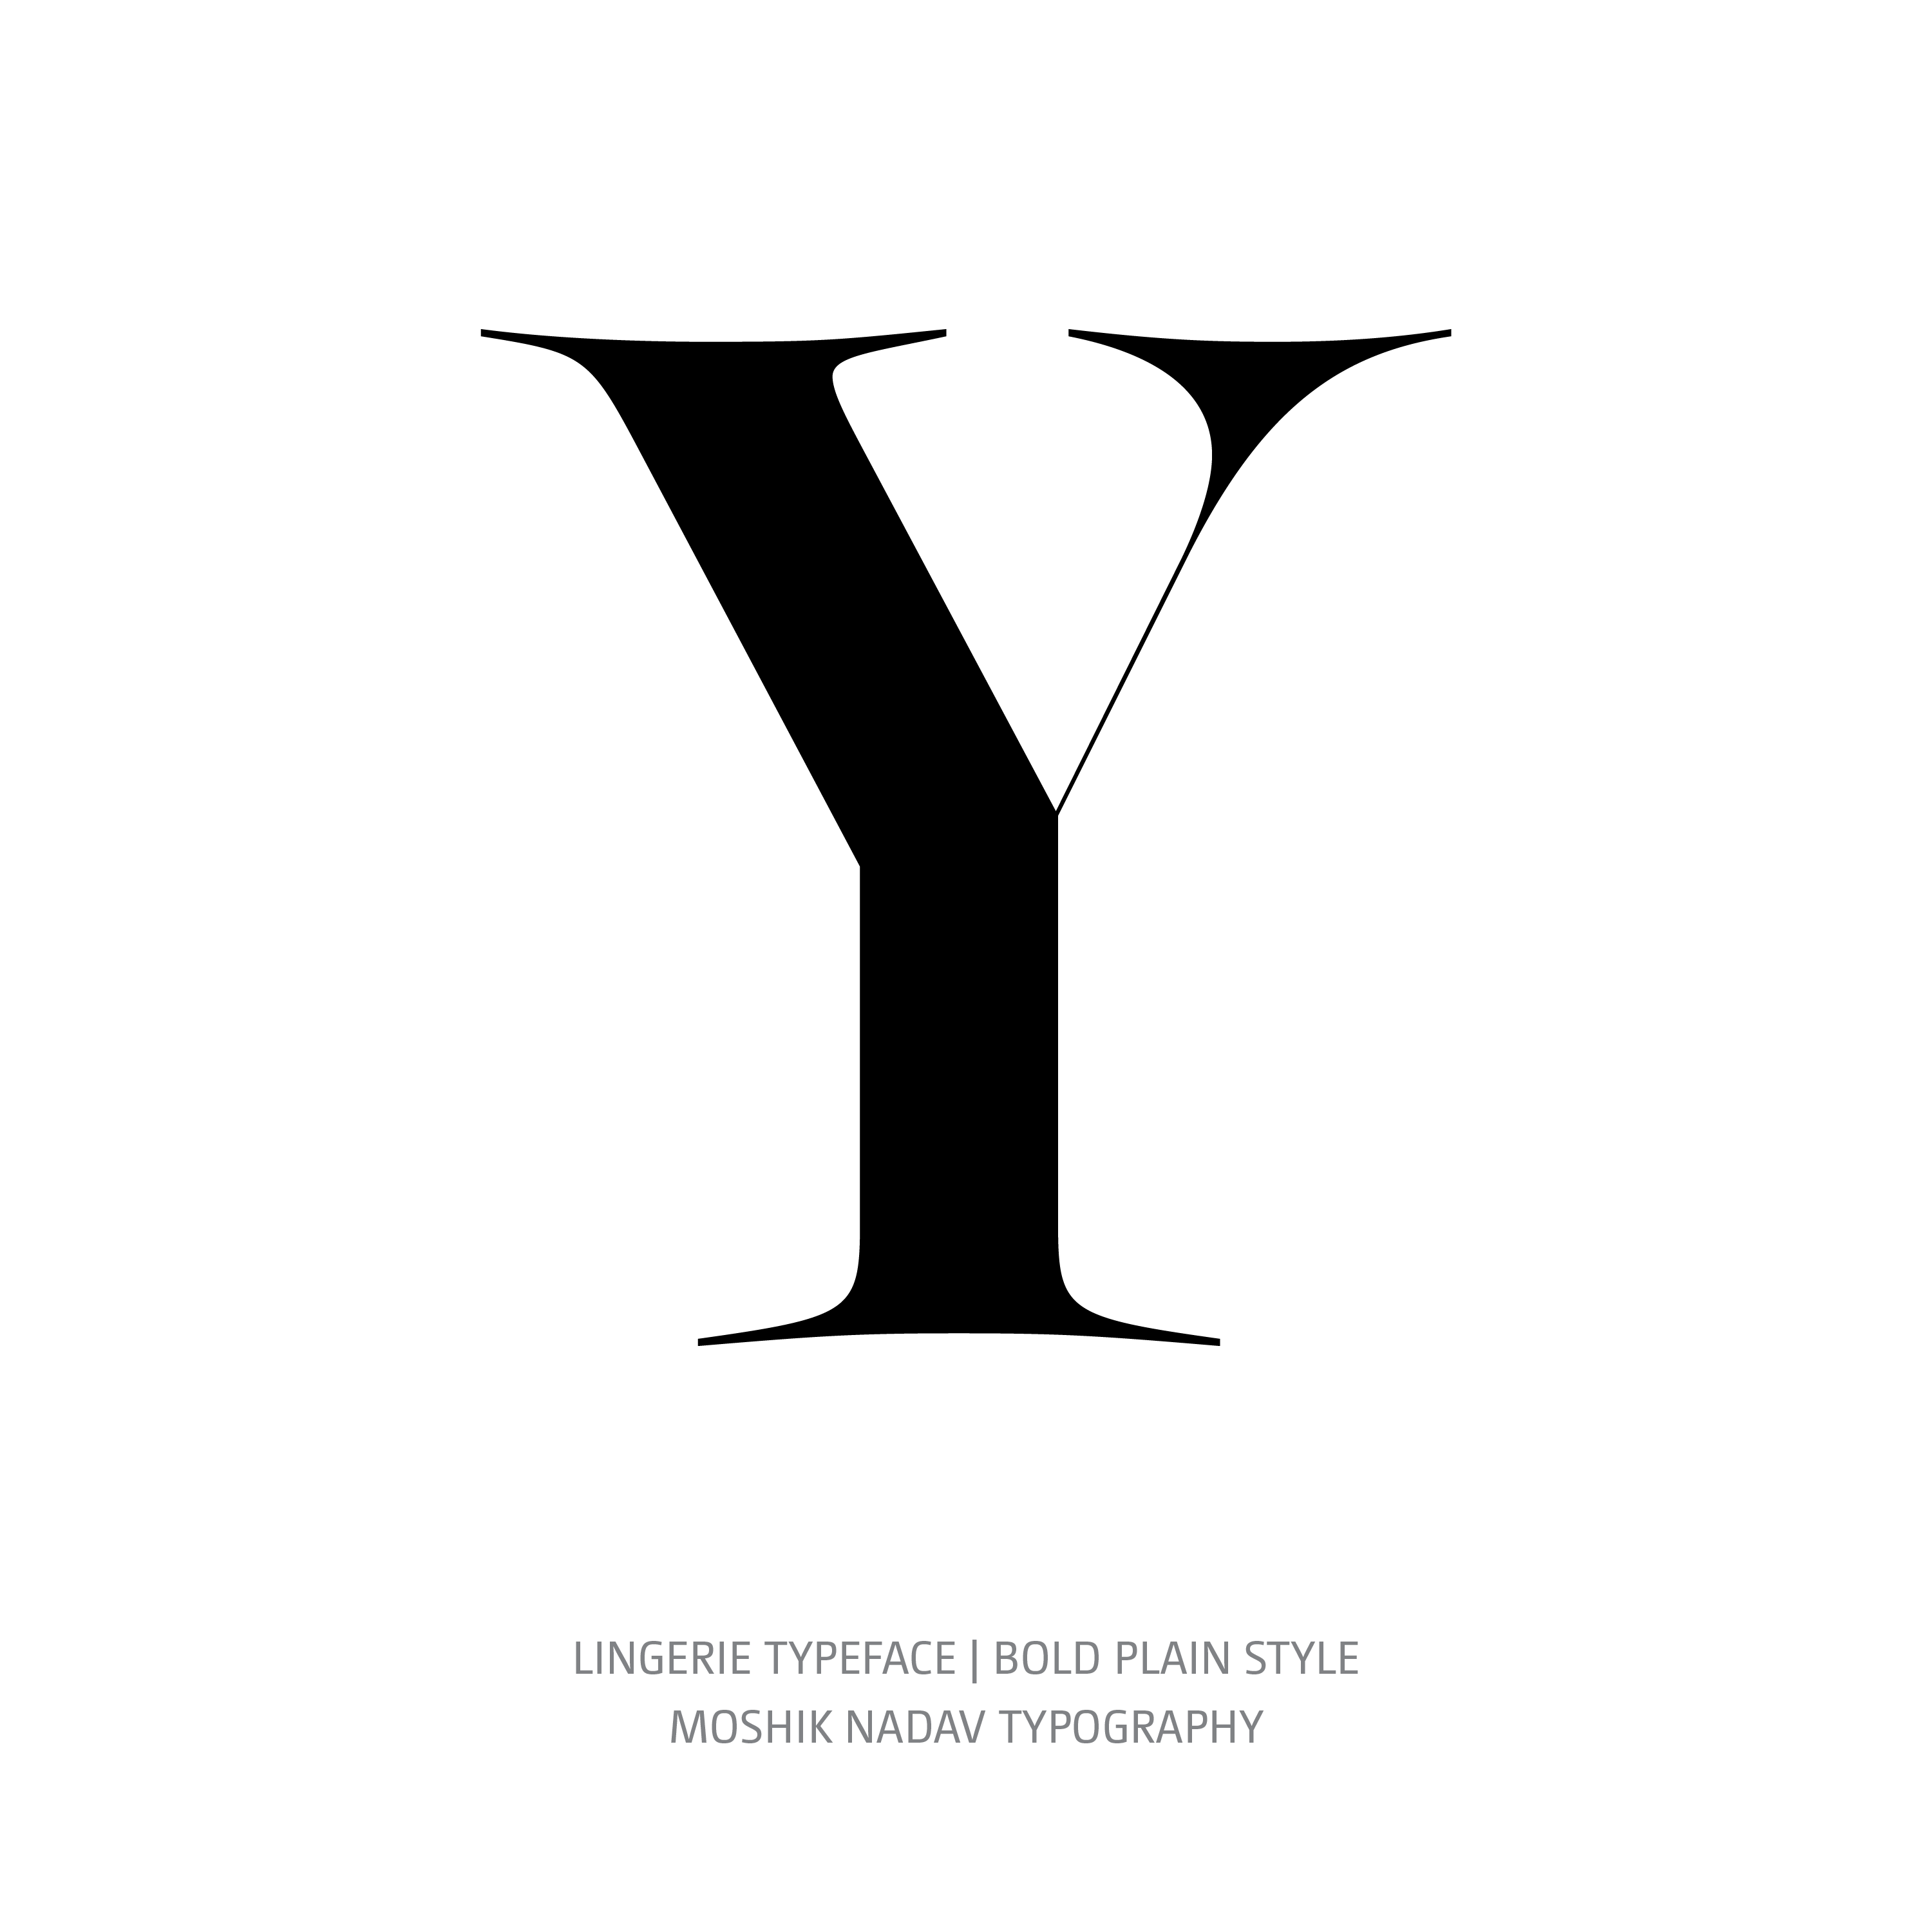 Lingerie Typeface Bold Plain Y